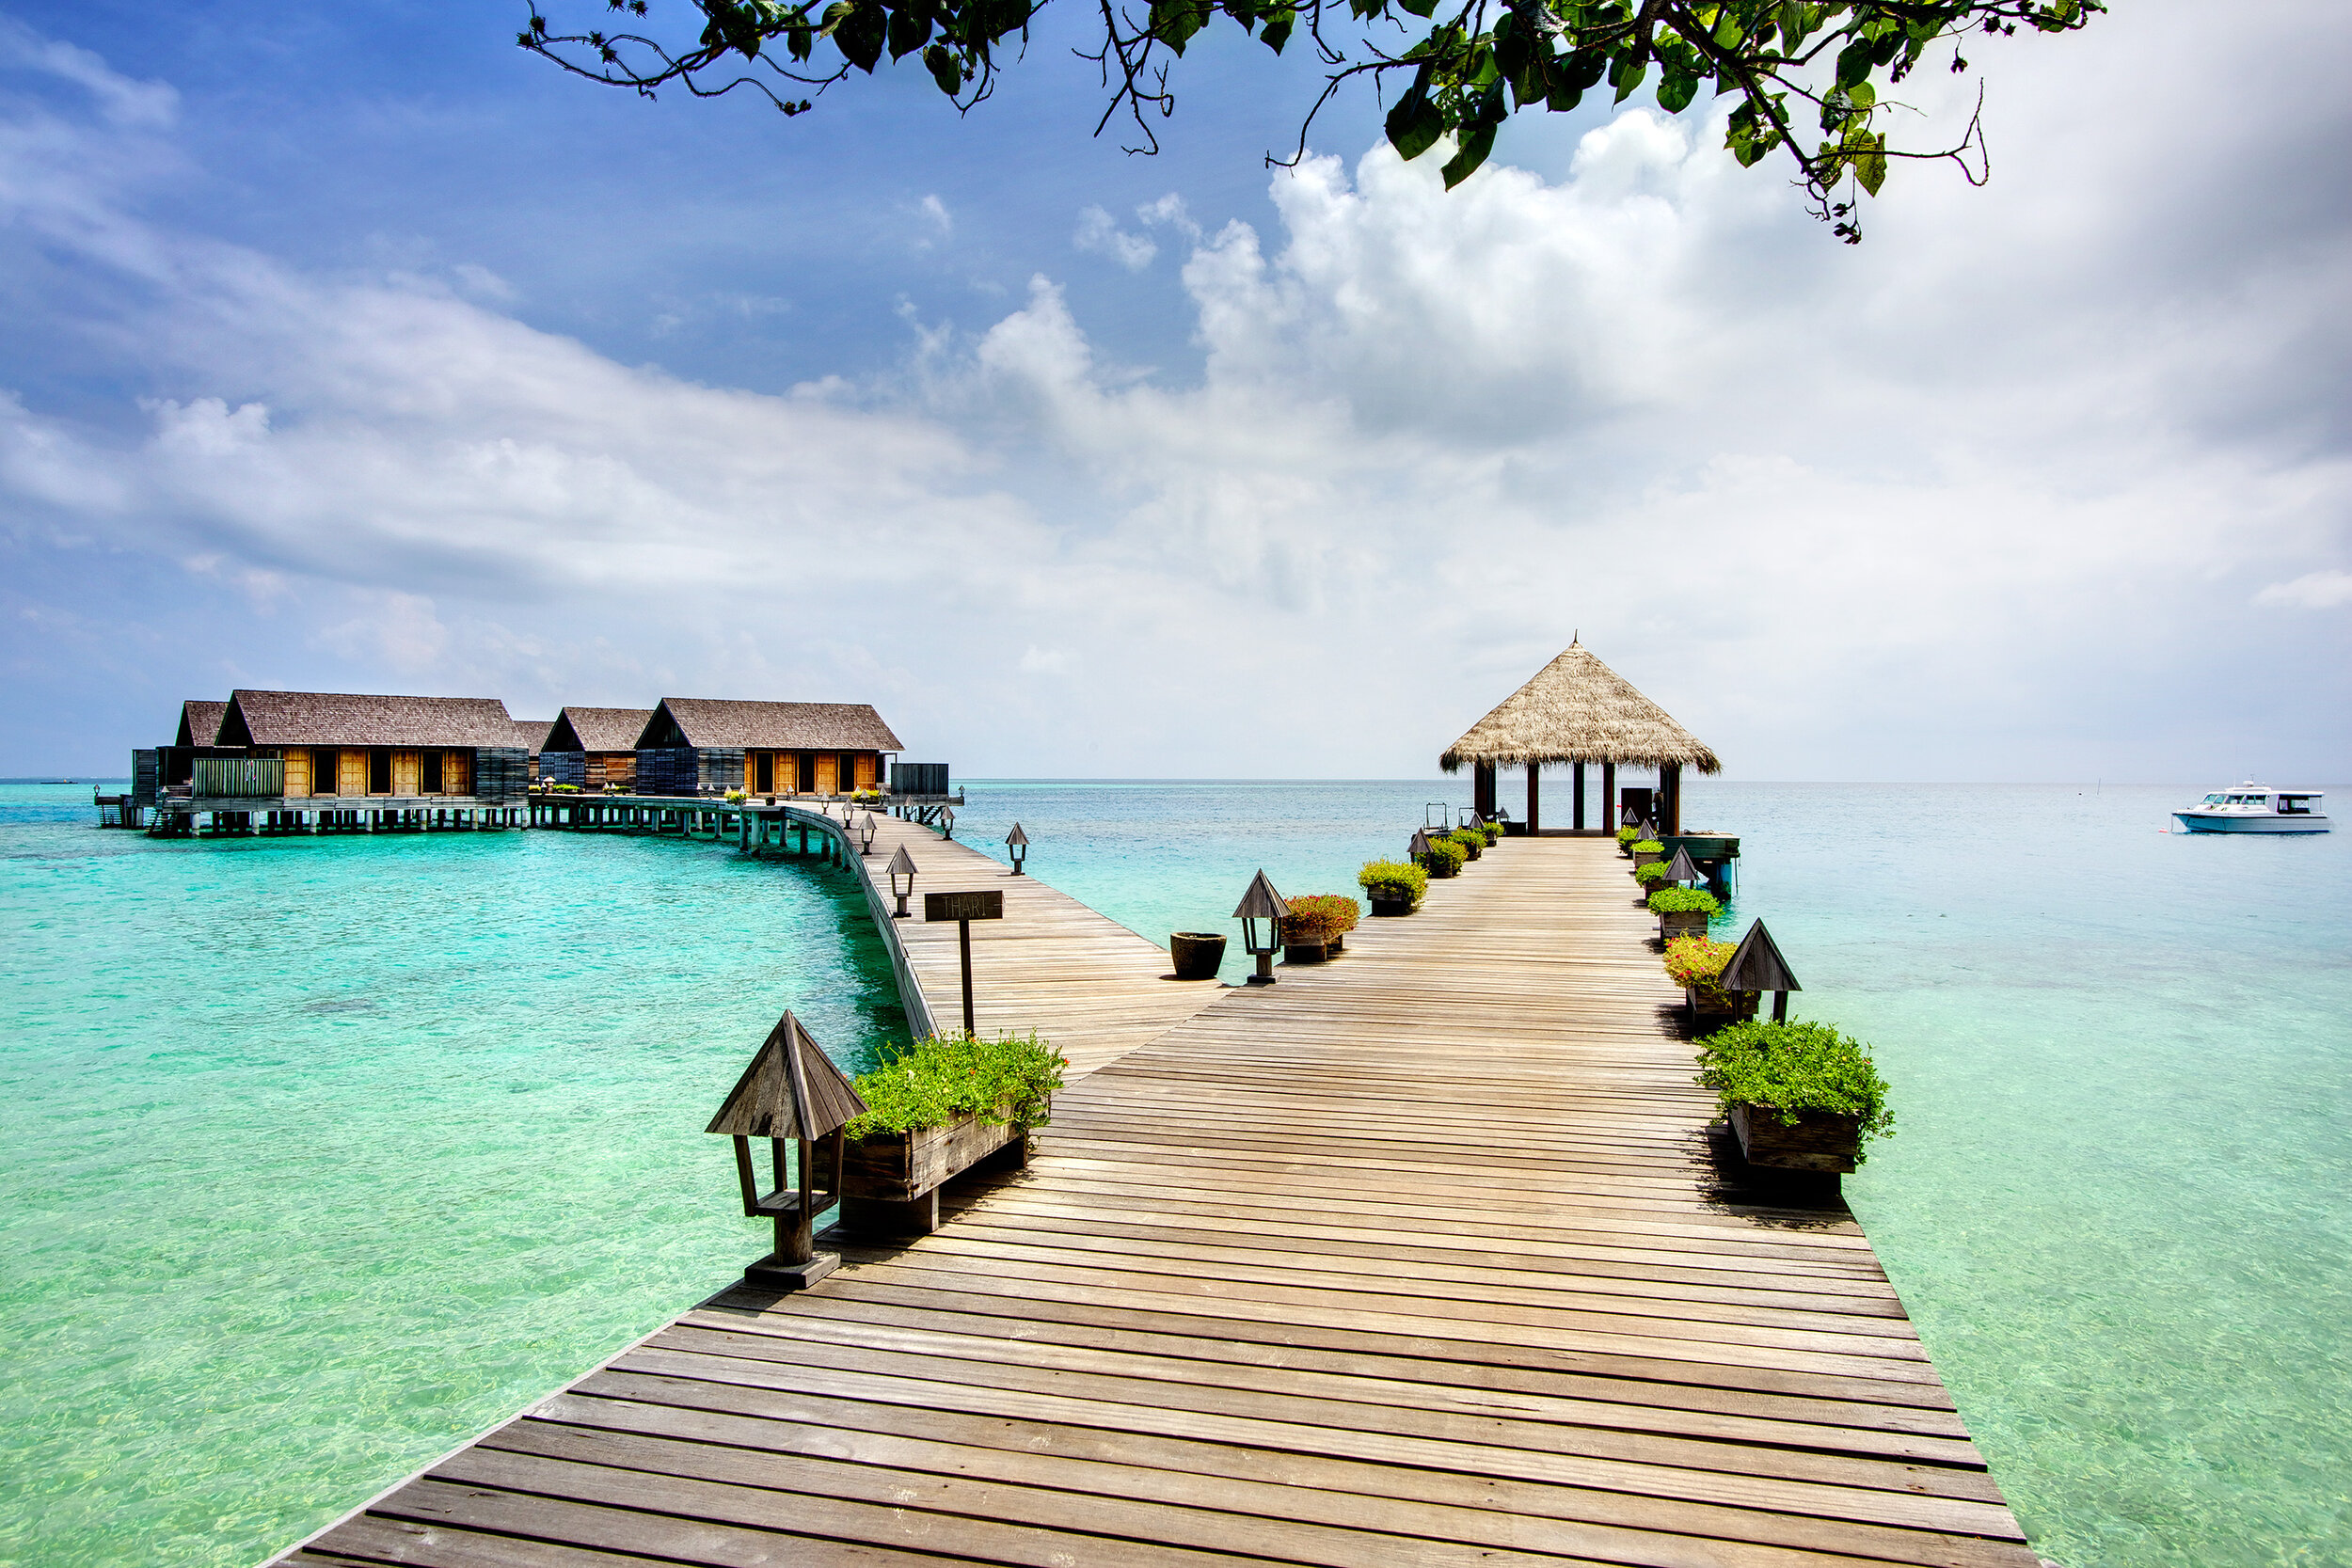 maldive-hotel-gangehi-water-villa-passerella-wadidestination.jpg